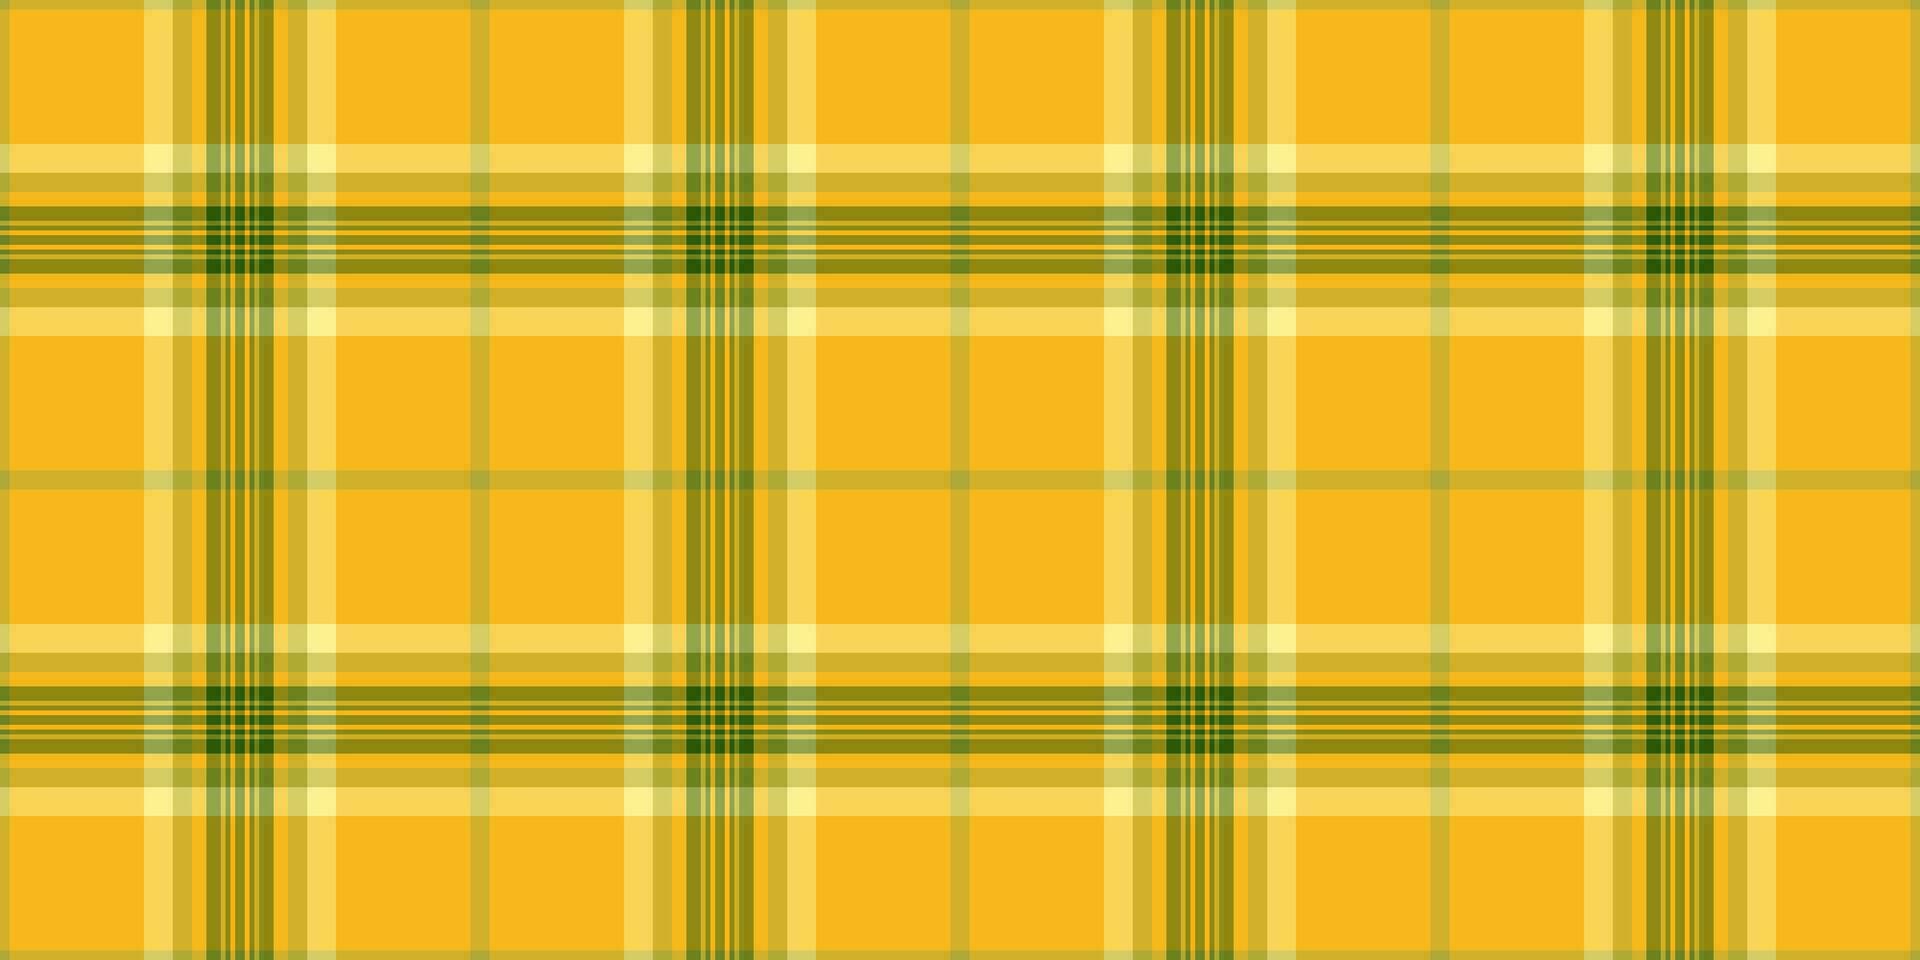 cobertura vetor Verifica padrão, mínimo desatado tartan fundo. lã têxtil xadrez textura tecido dentro amarelo e âmbar cores.